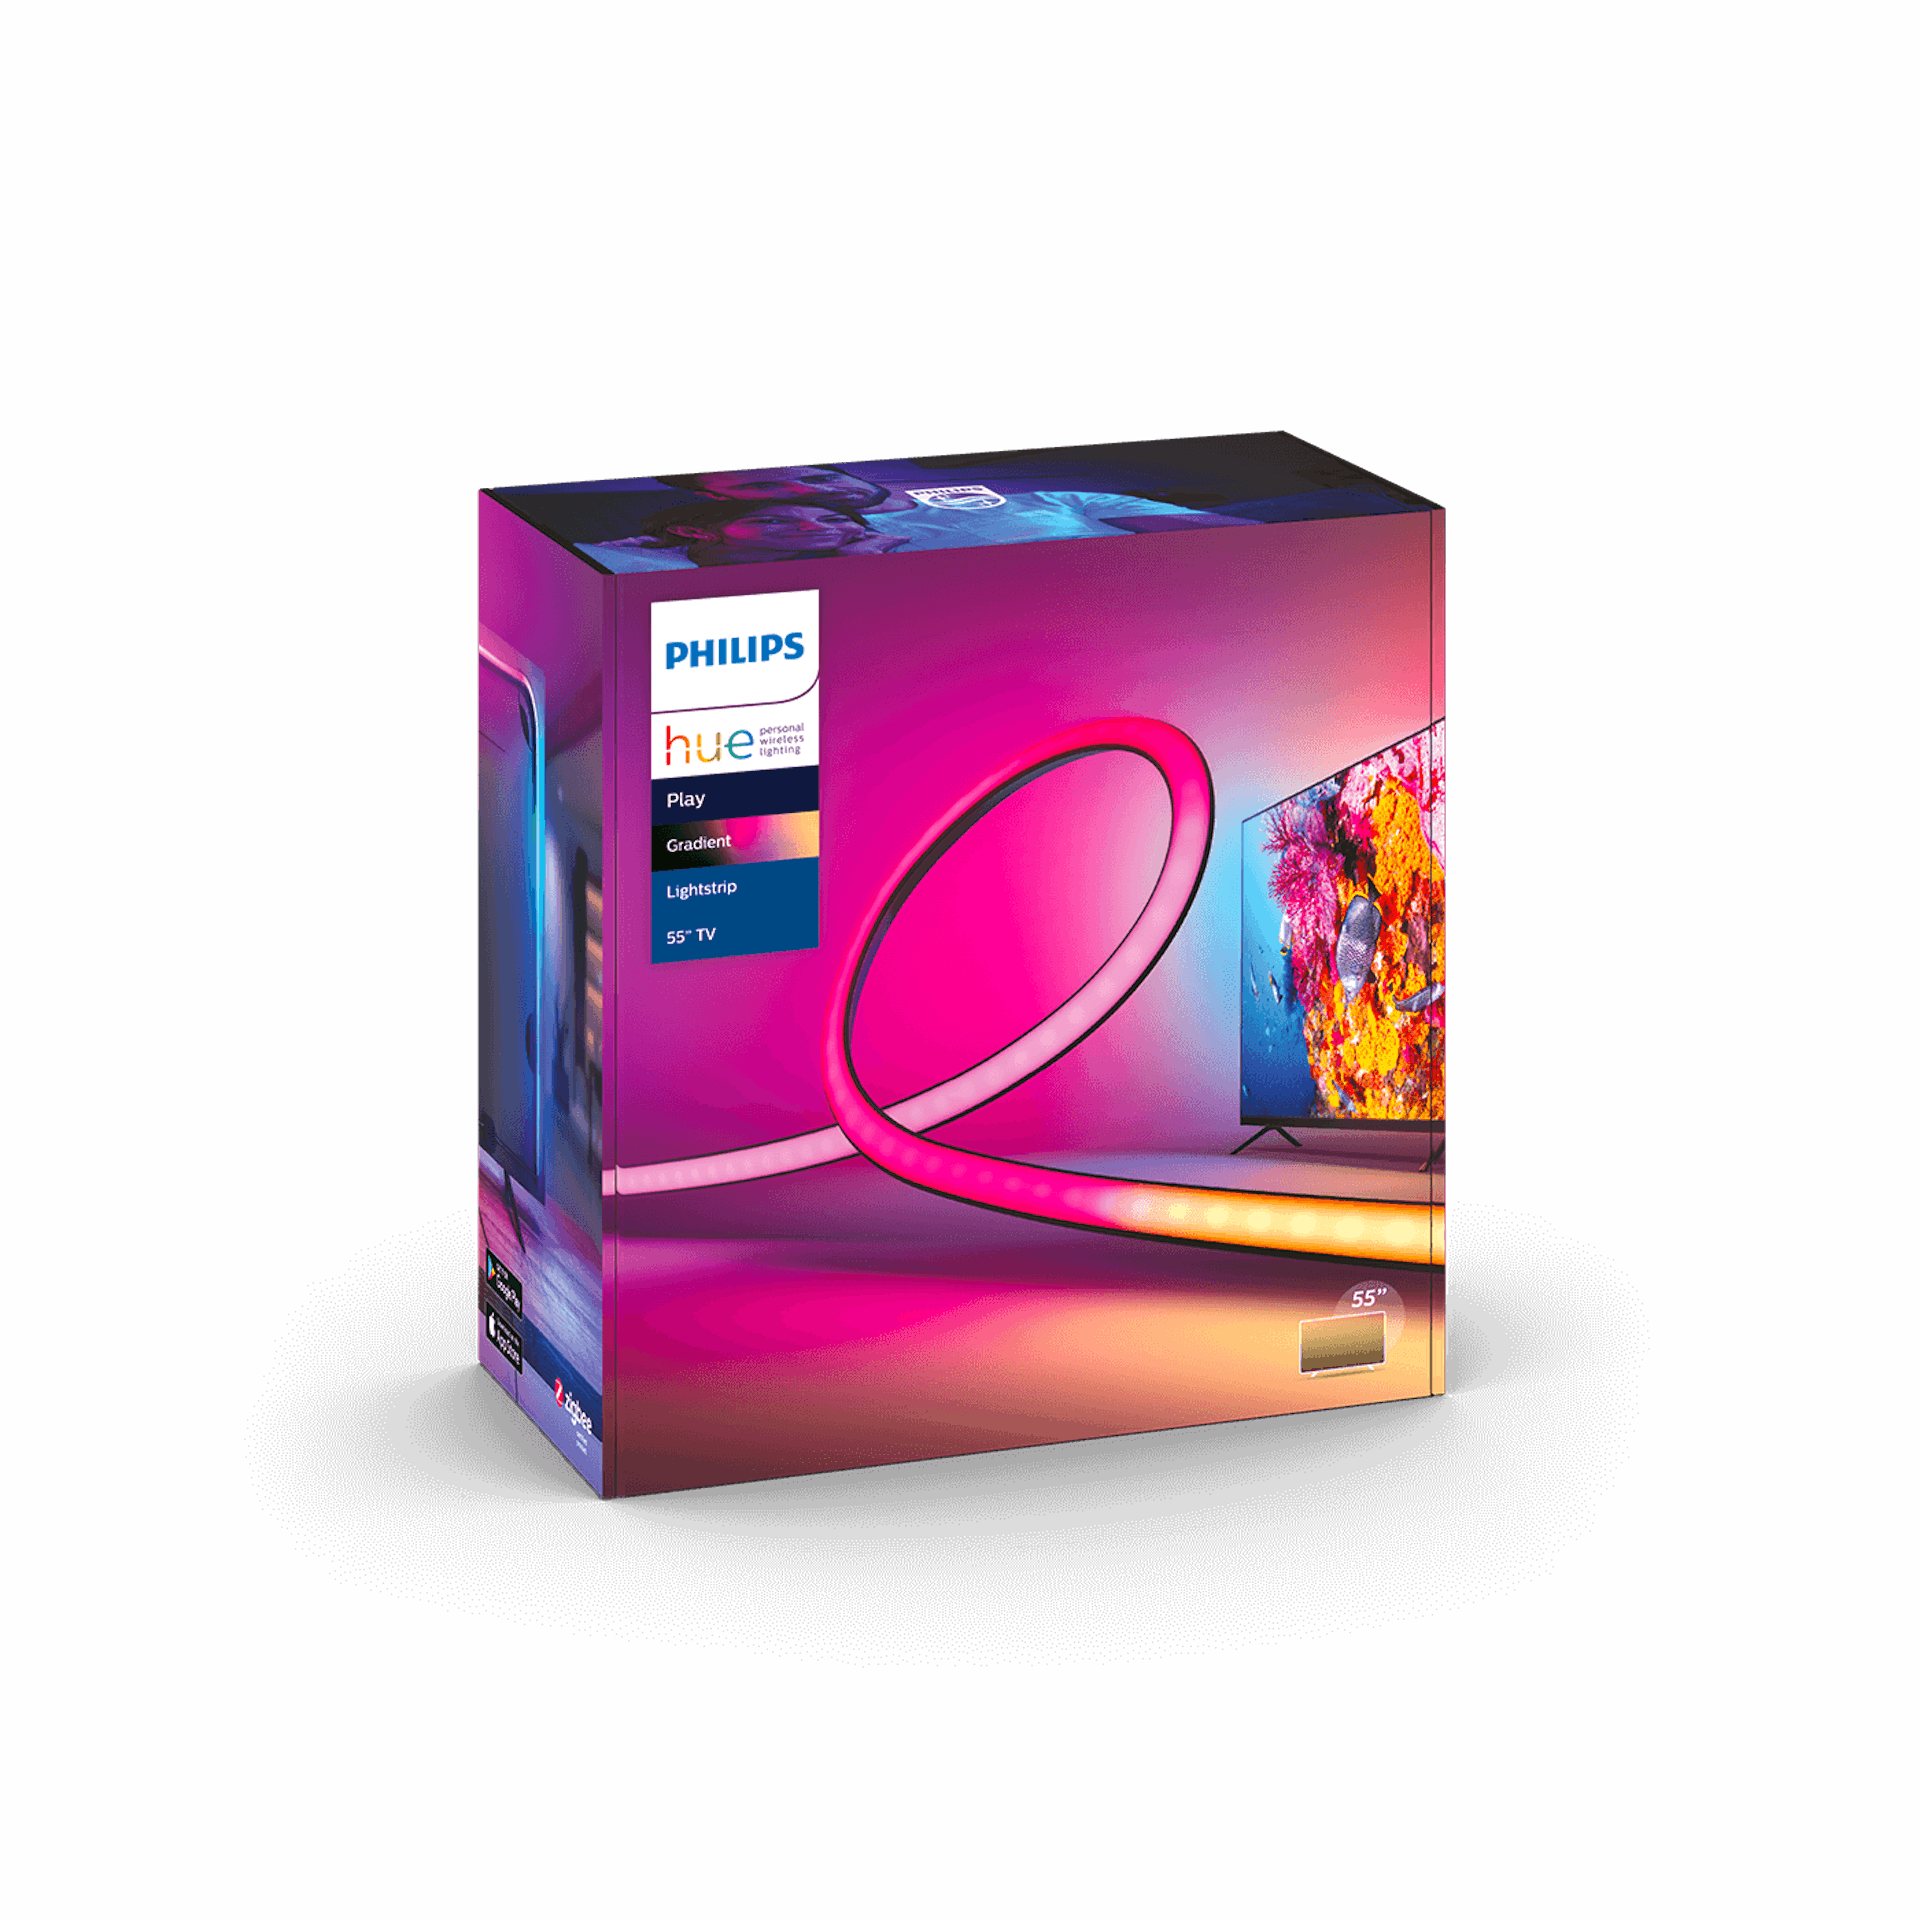 Philips Hue Play Gradient Lightstrip 55 - Packaging